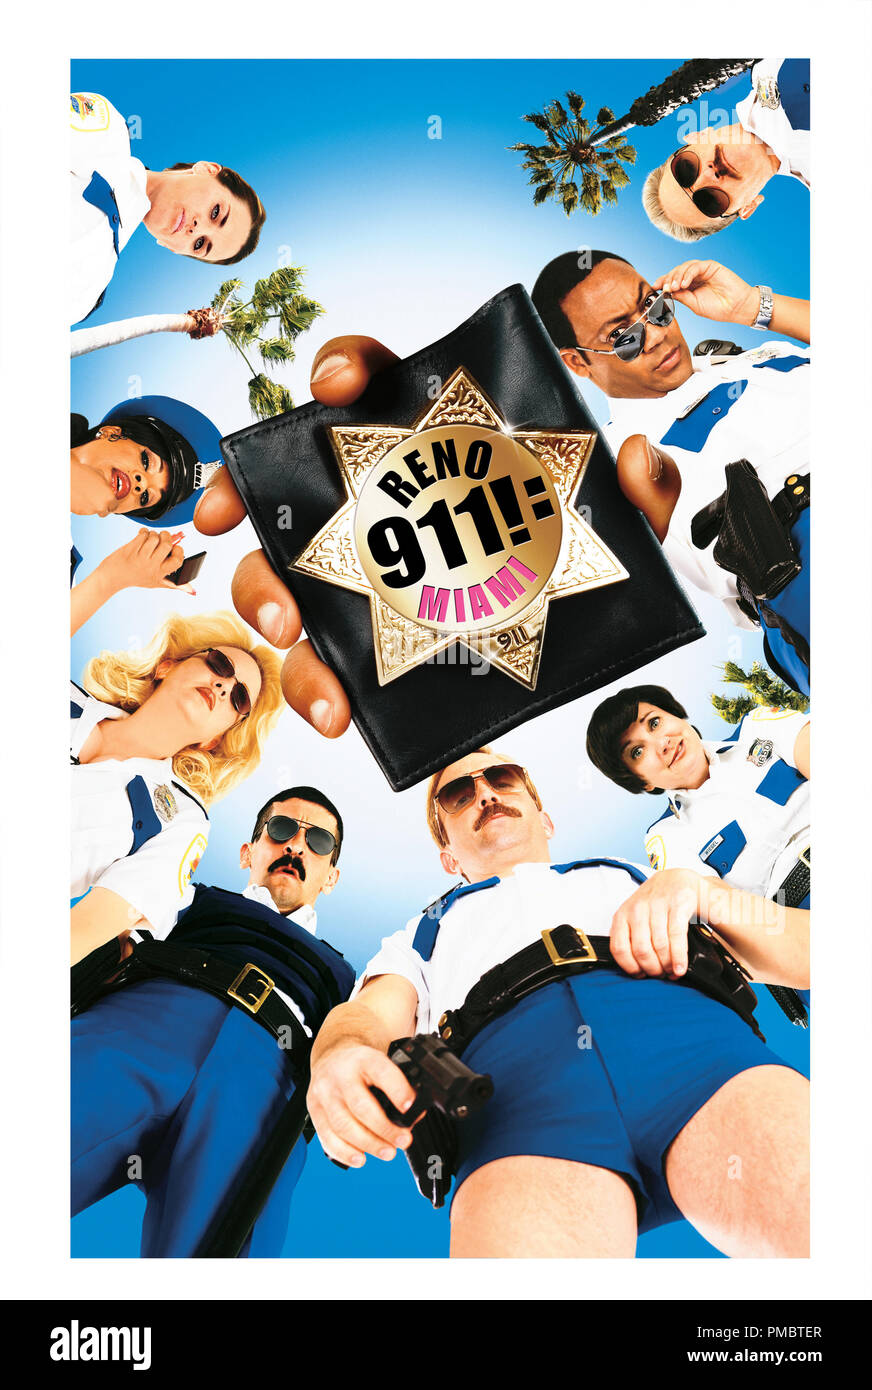 RENO 911!: MIAMI - Poster Stockfoto